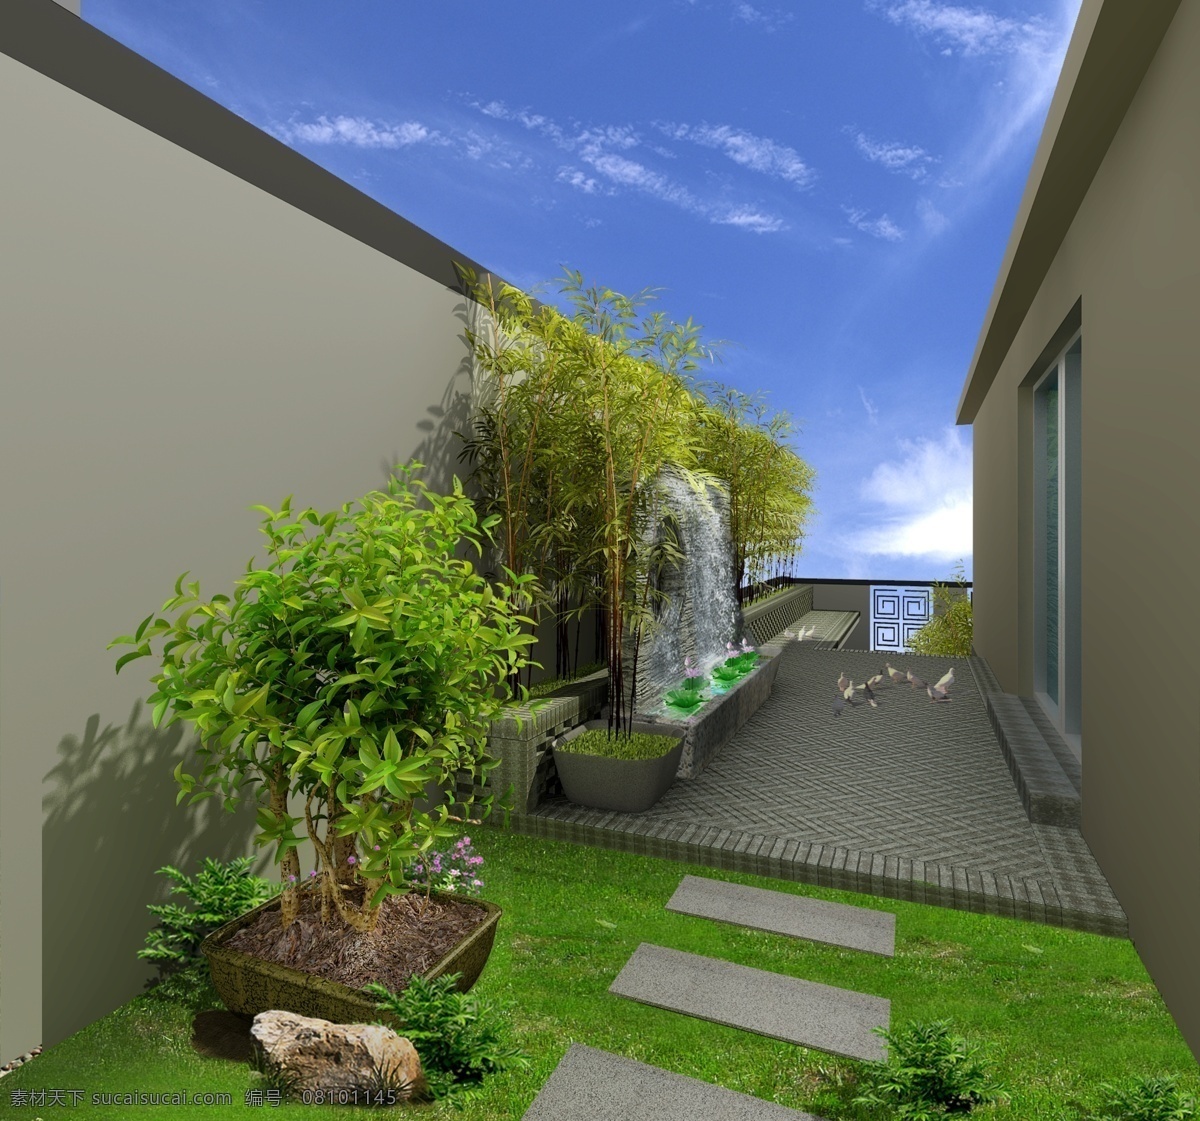 别墅 庭院 景观设计 鸽子 喷泉 鲜花 草地 树木 房屋 建筑物 蓝天 白云 环境设计